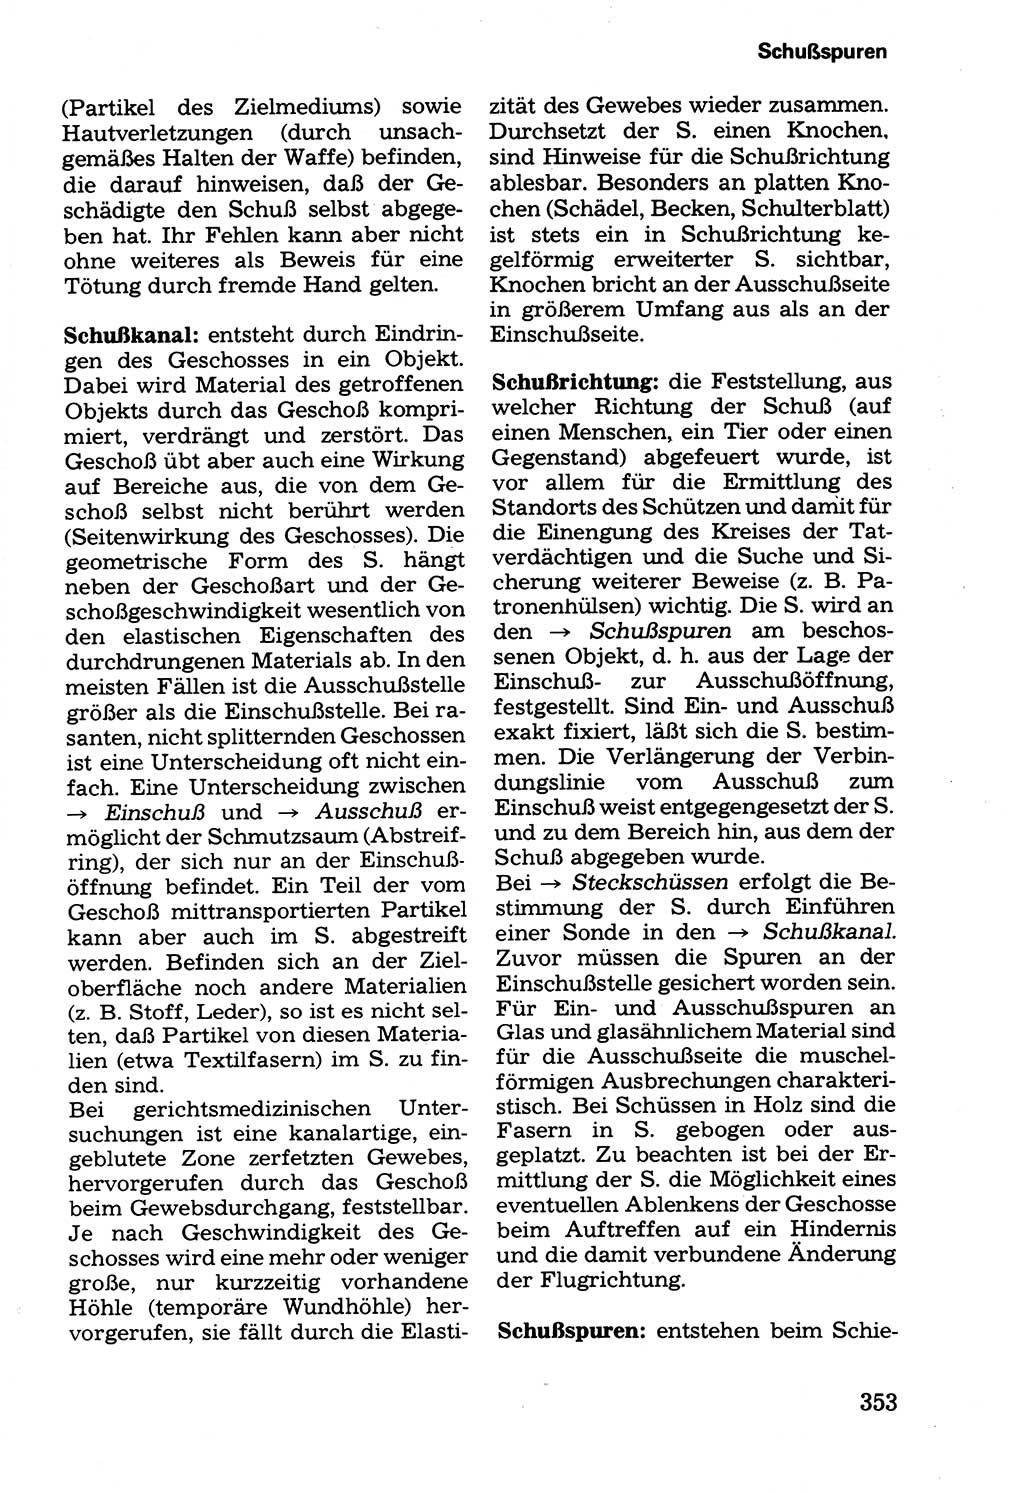 Wörterbuch der sozialistischen Kriminalistik [Deutsche Demokratische Republik (DDR)] 1981, Seite 353 (Wb. soz. Krim. DDR 1981, S. 353)